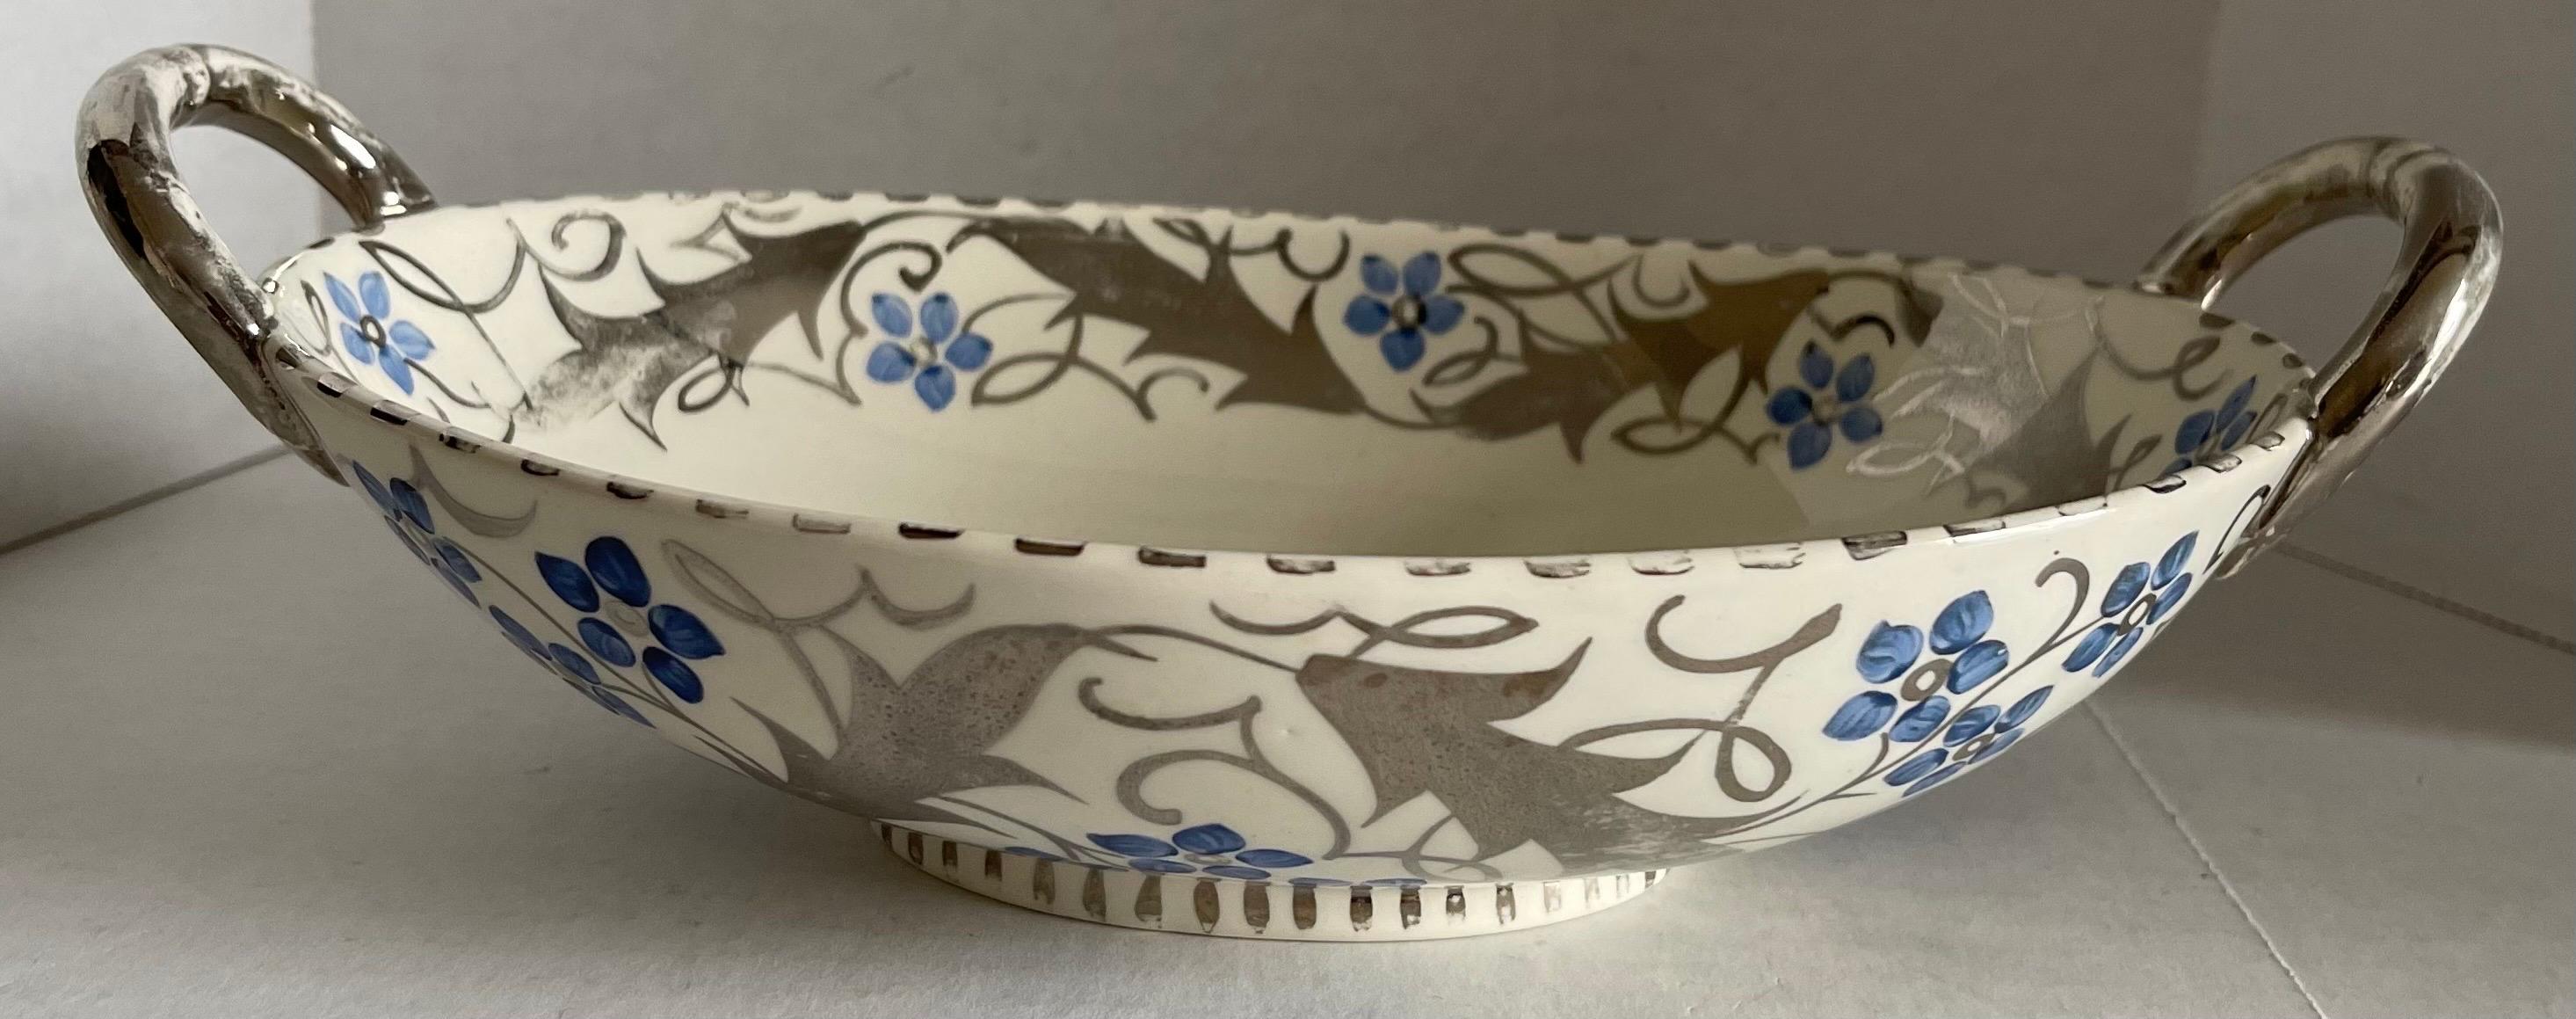 Ancien panier ouvert en porcelaine de Wedgwood des années 1930. En porcelaine osseuse avec un motif floral bleu et argent peint à la main. Tampon de la marque sur la face inférieure. 